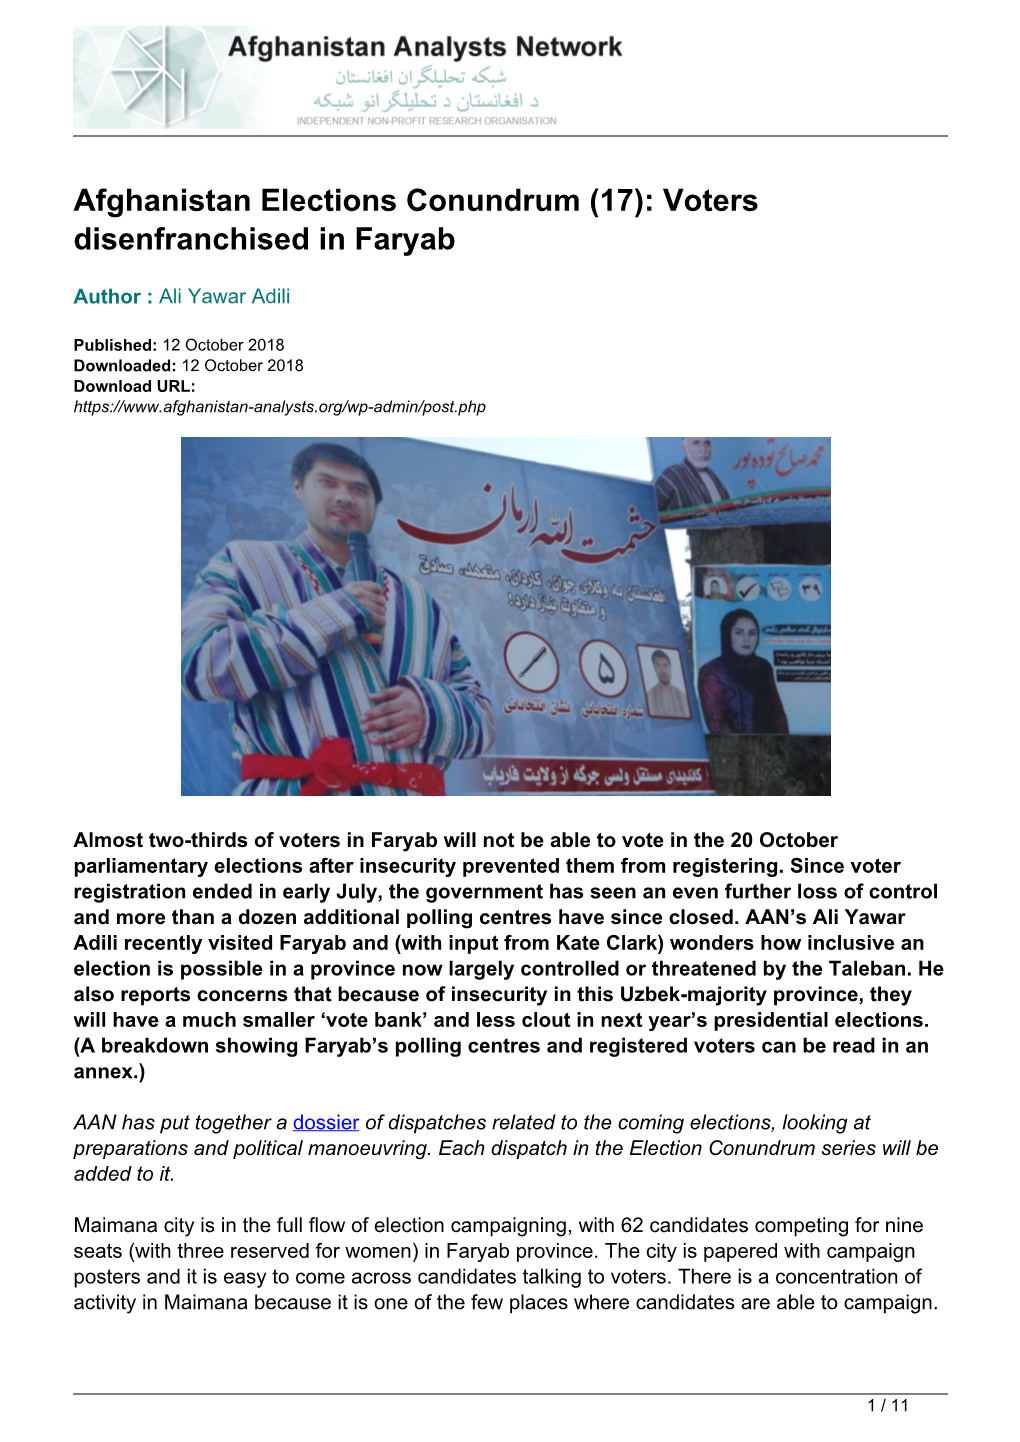 Voters Disenfranchised in Faryab